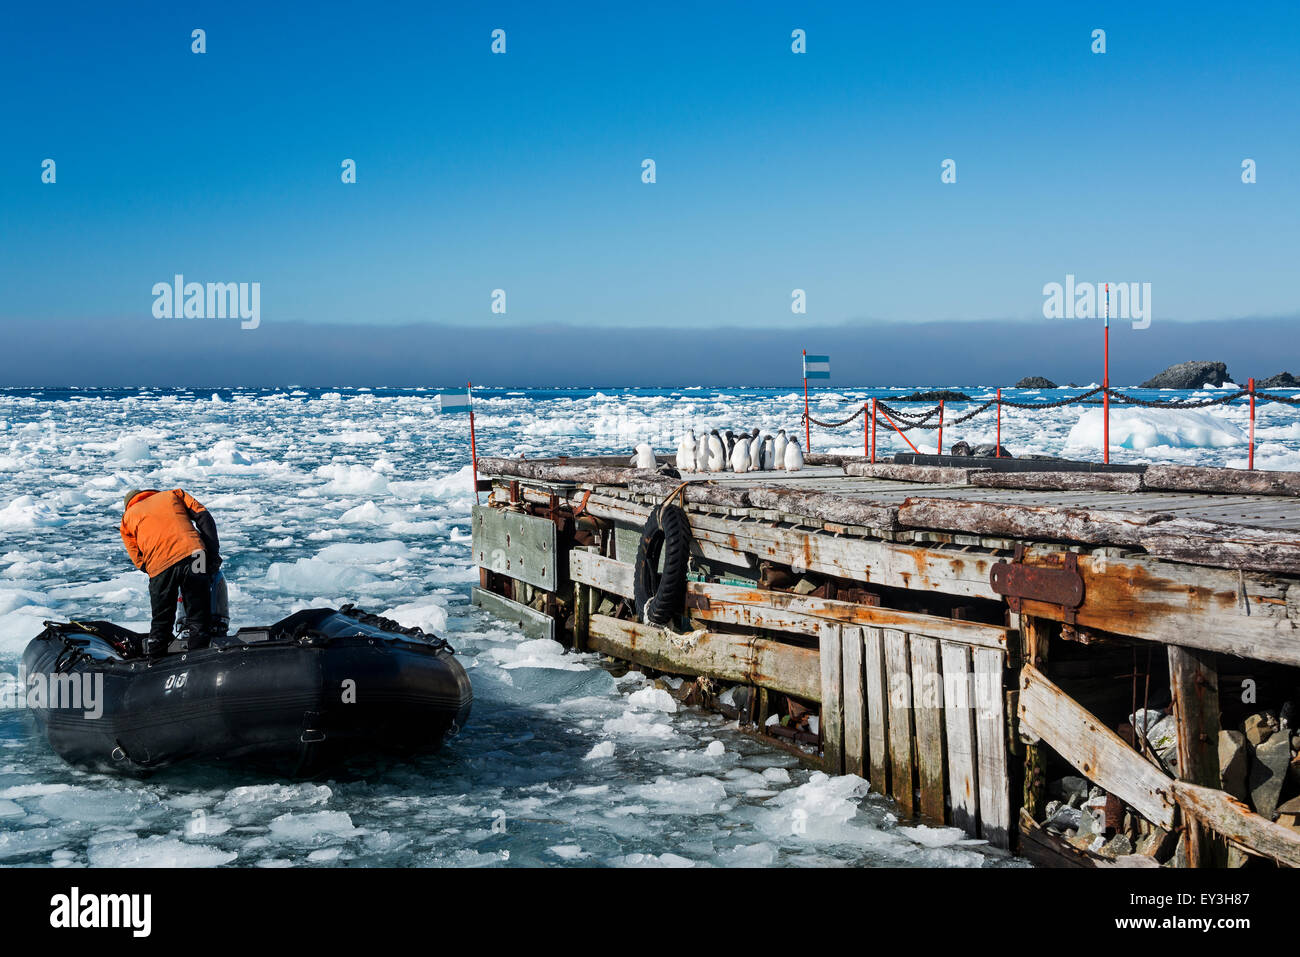 Ein Mitglied des Personals auf einem Schlauchboot in der Nähe einer Anlegestelle auf dem gefrorenen Ozean auf der Esperanza Base. Adelie-Pinguine auf dem Steg. Stockfoto